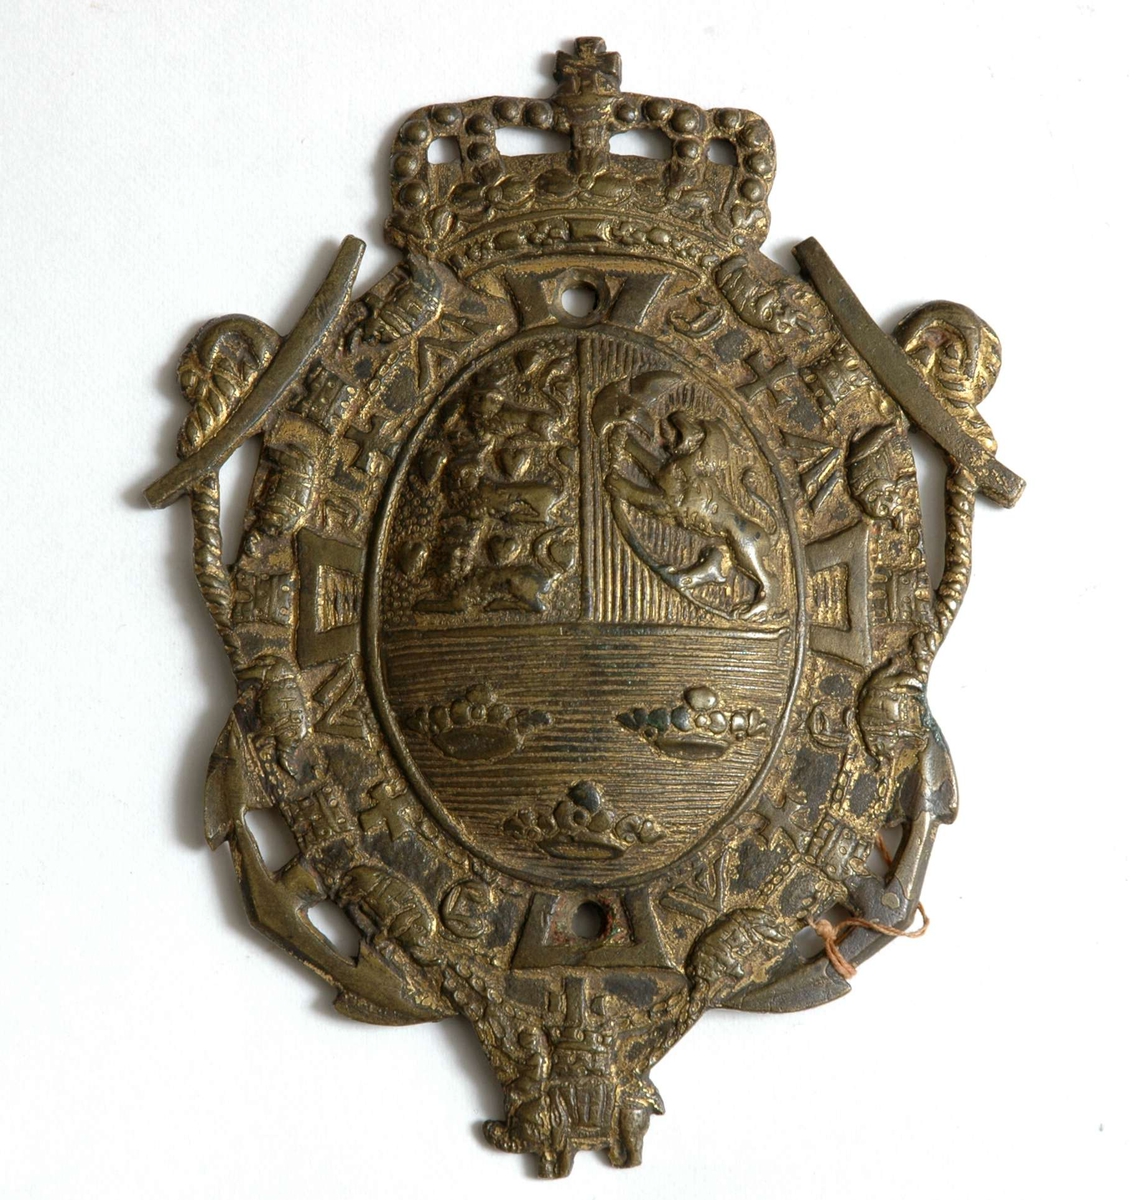 Ovalt messingskilt med det kronede tredelte dansk-norske riksvåpenet med Elefantordenen i bunn
Skiltet har rester av forgylling.